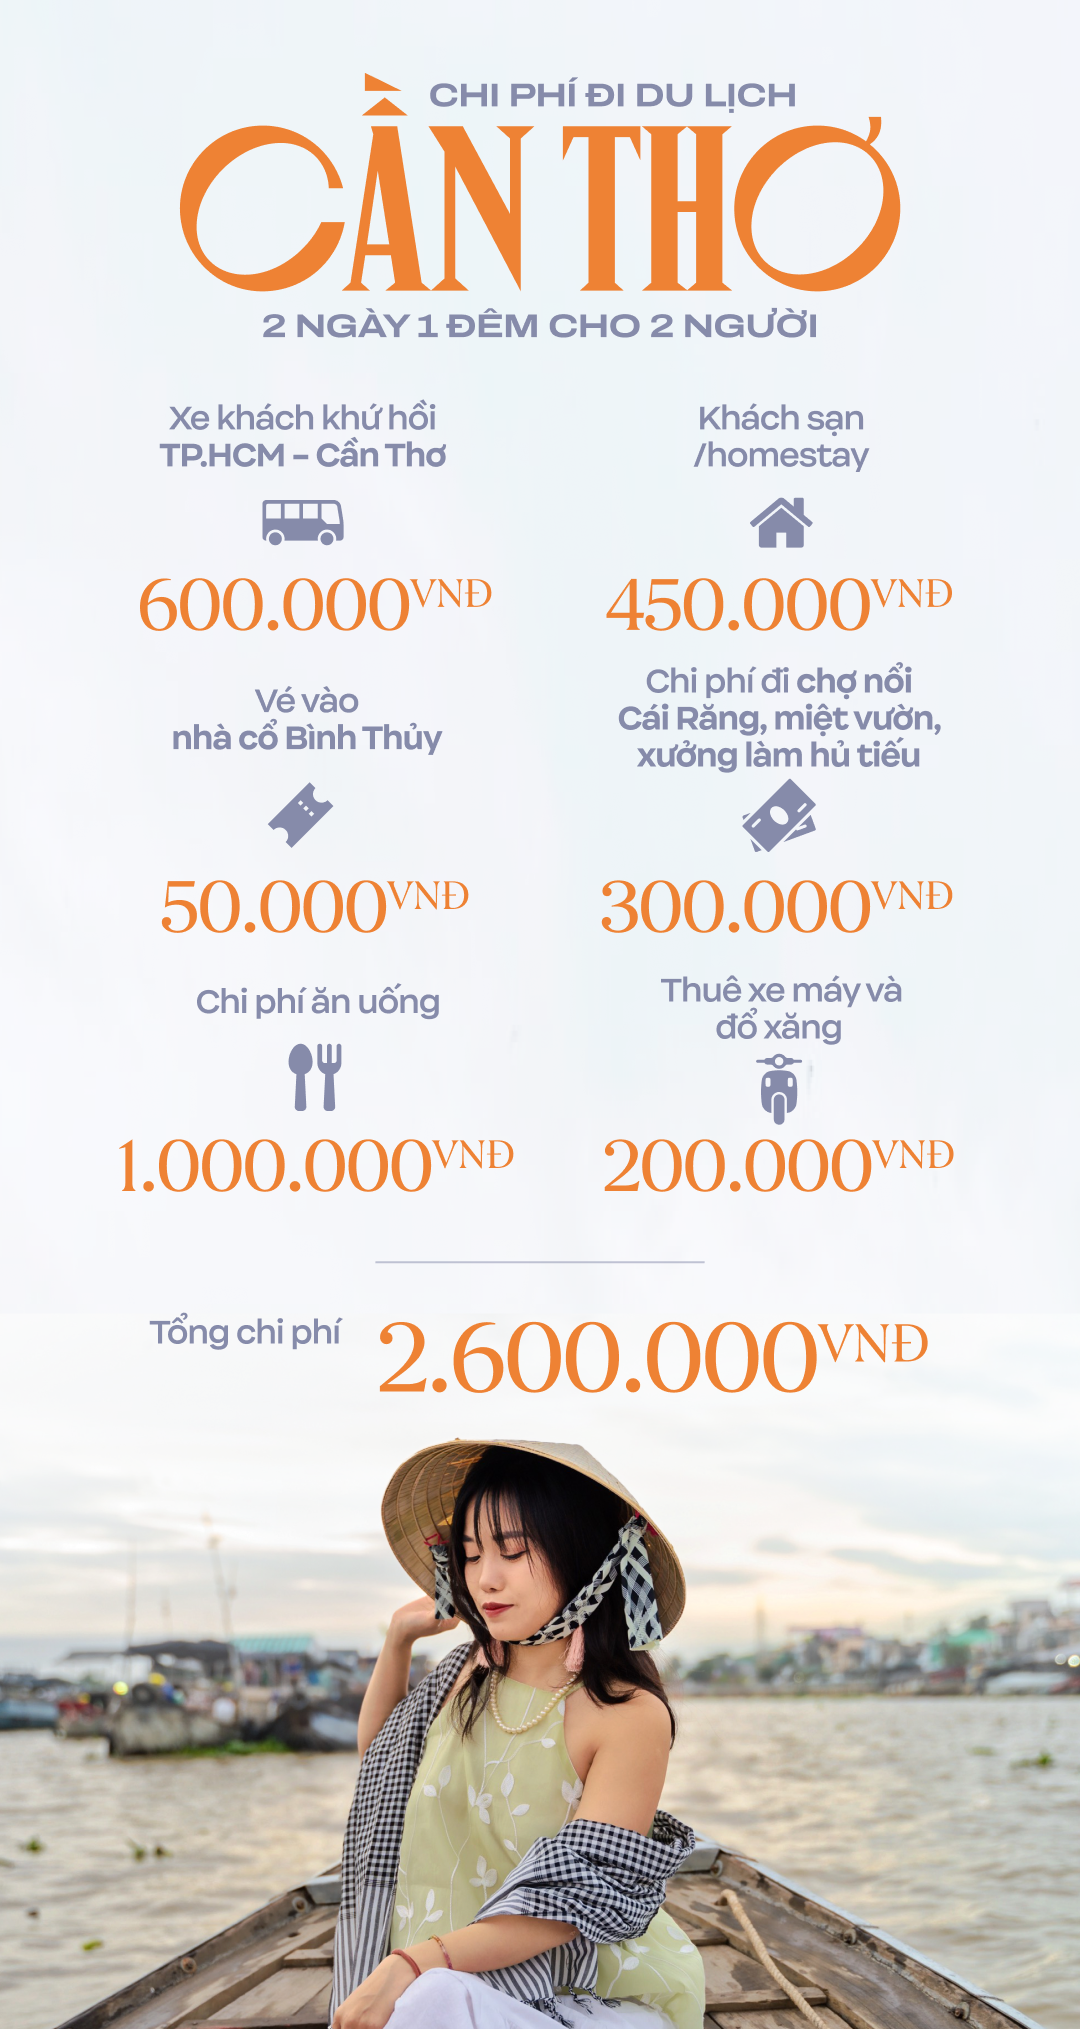 Rủ nhau đi du lịch Cần Thơ "gạo trắng nước trong" chỉ hơn 1 triệu/người lại được ăn ngon và có nhiều ảnh check-in đẹp - Ảnh 13.